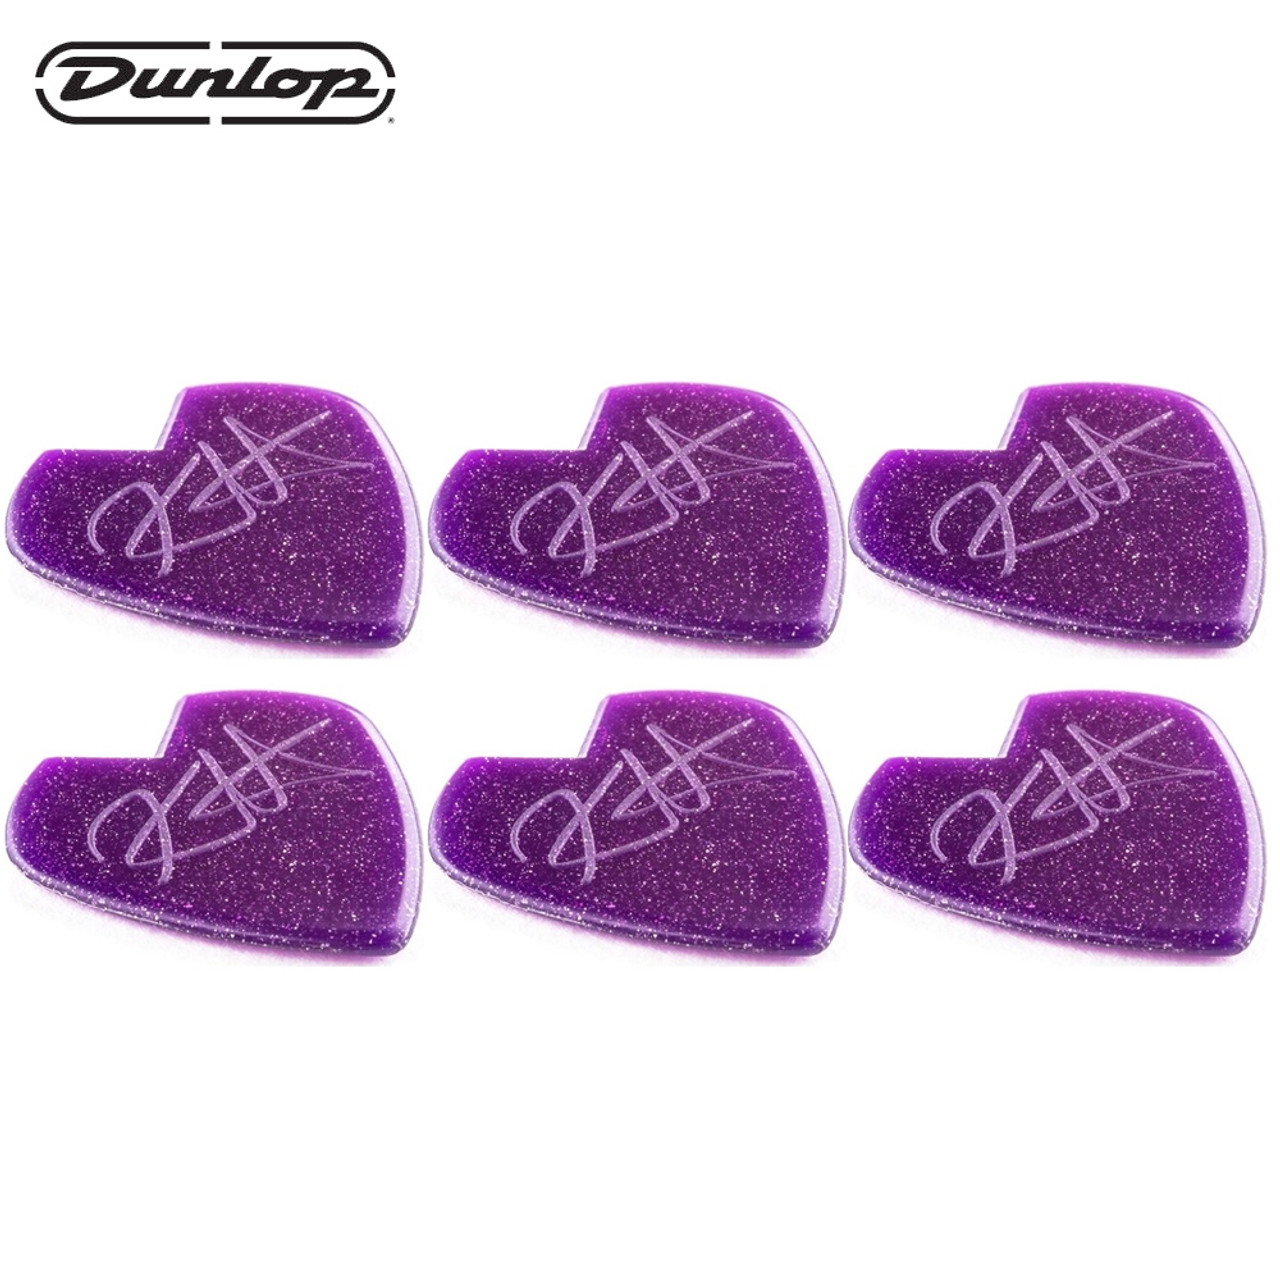 6-PACK Dunlop 47PKH3NPS Kirk Hammett Jazz III Guitar Picks Purple ...